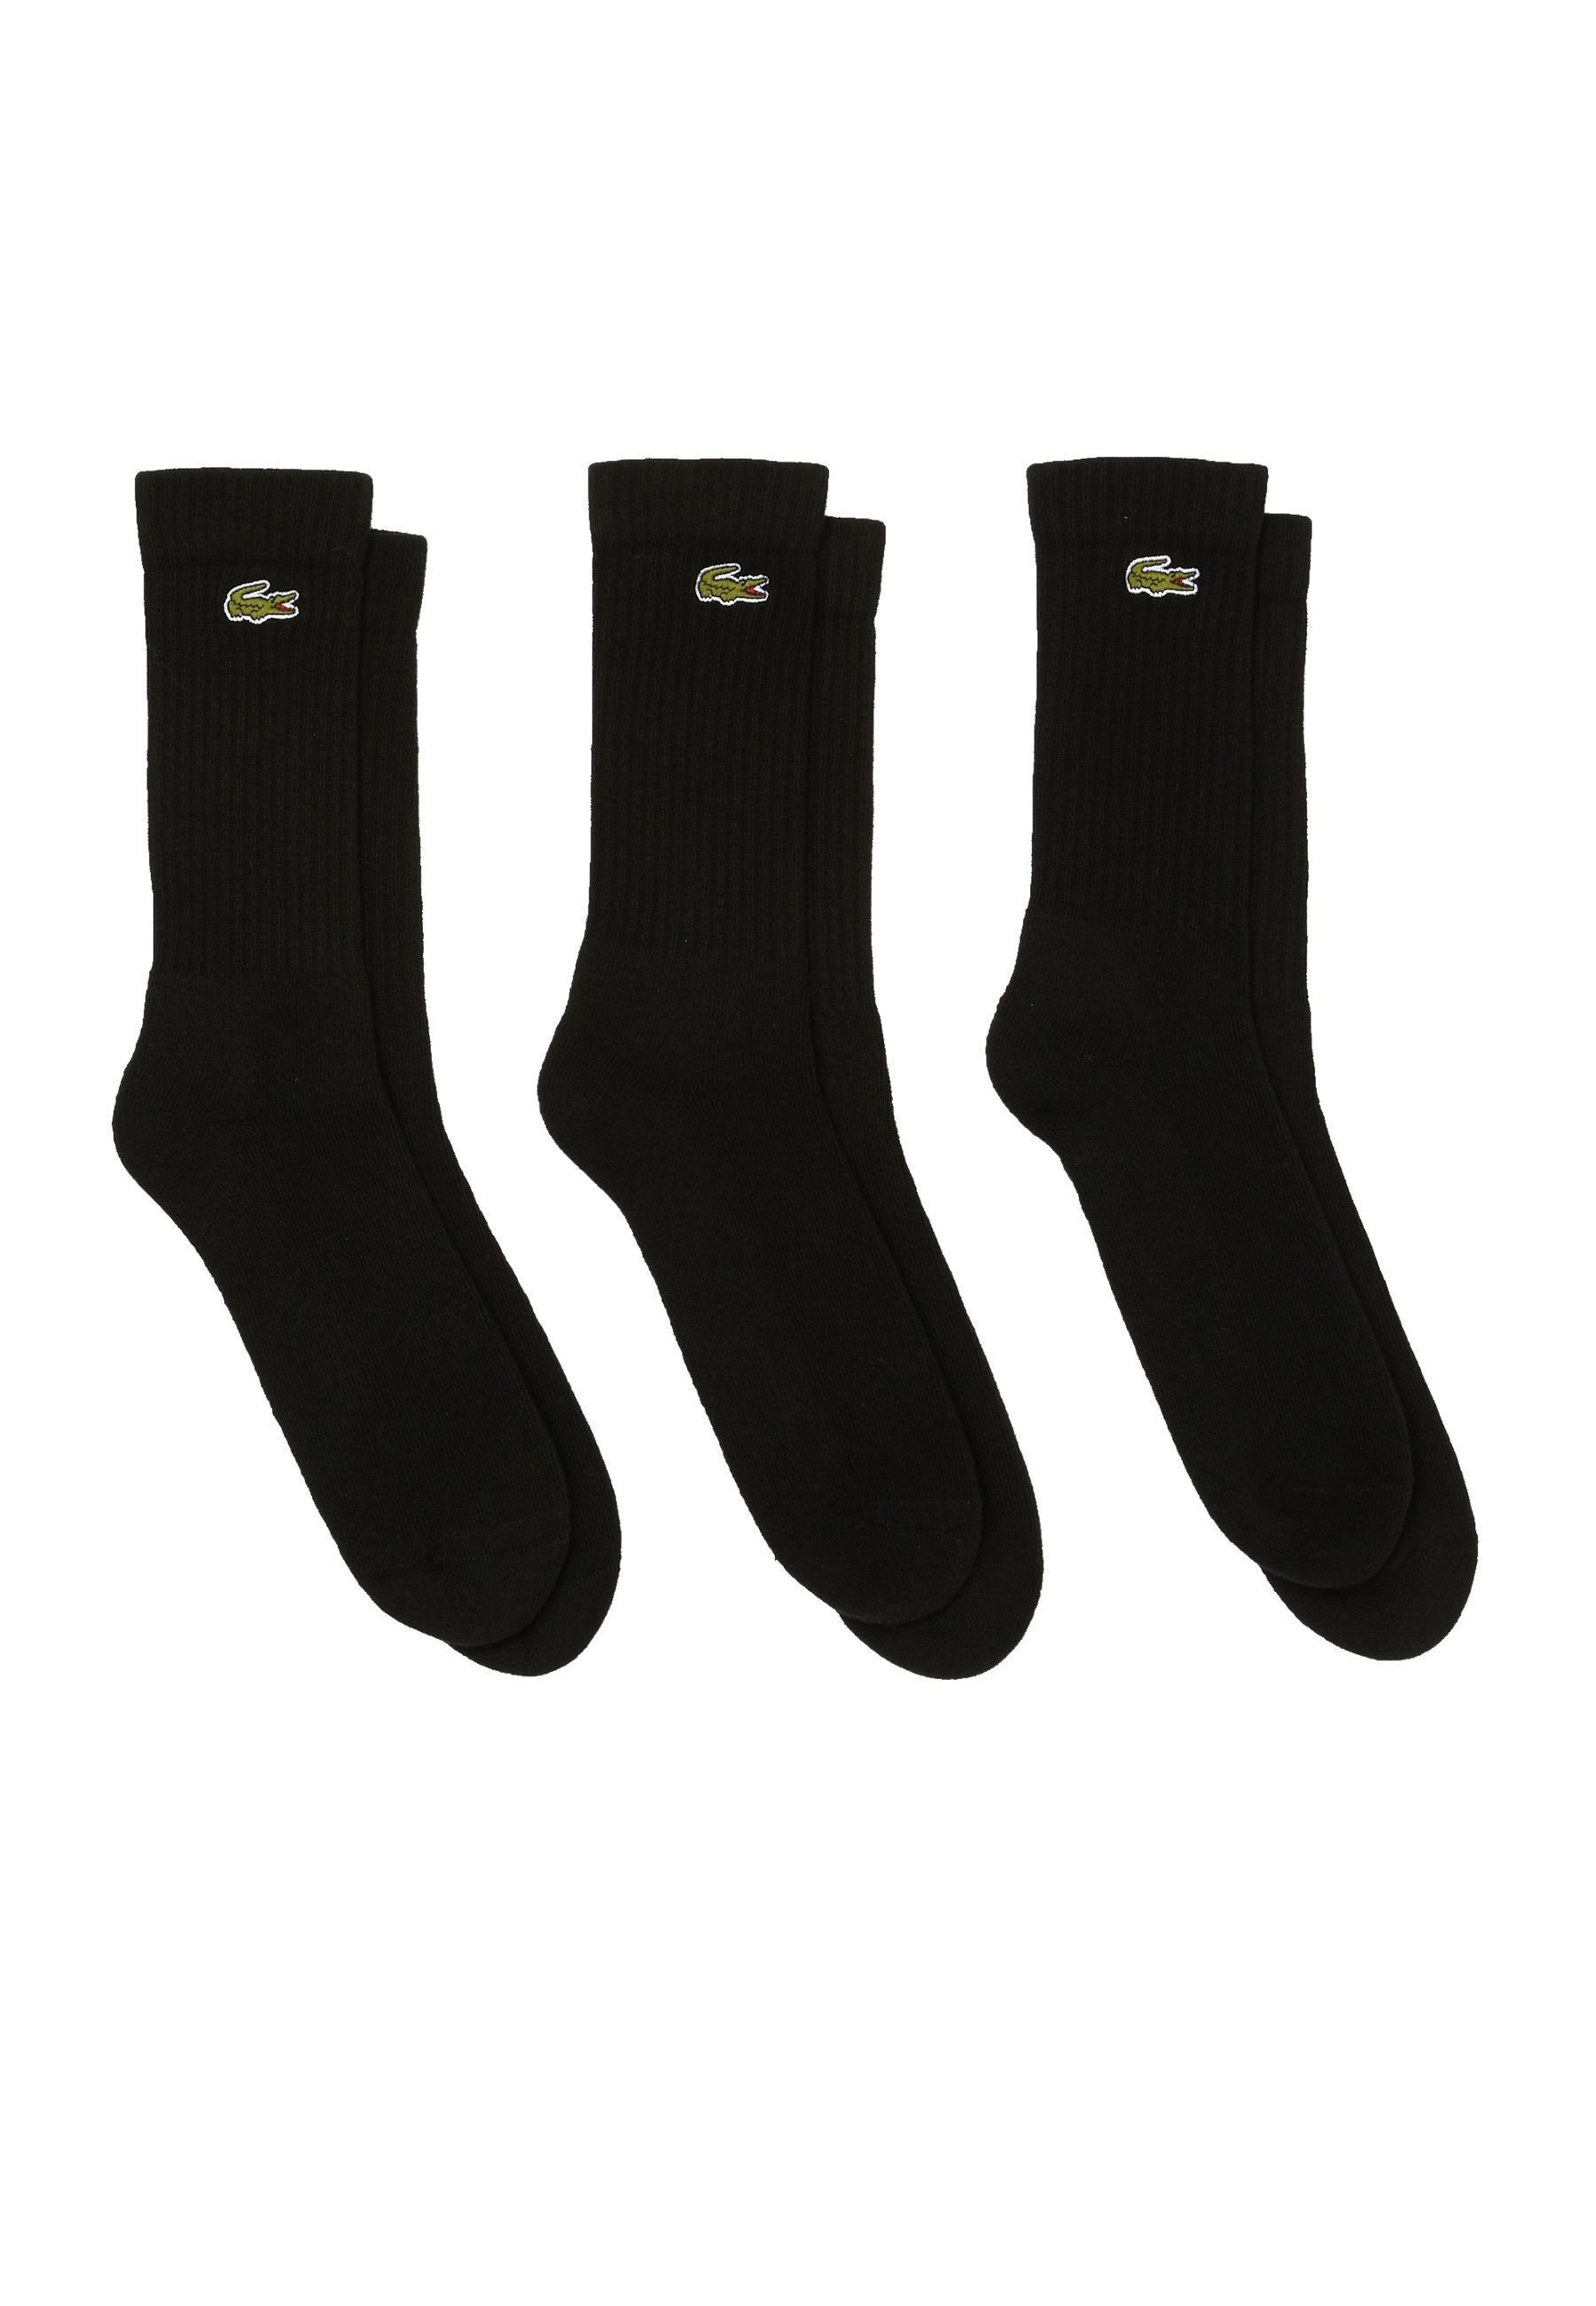 Lacoste Socken Socken Permanent Offer hohe Socken Dreierpack (3-Paar) schwarz